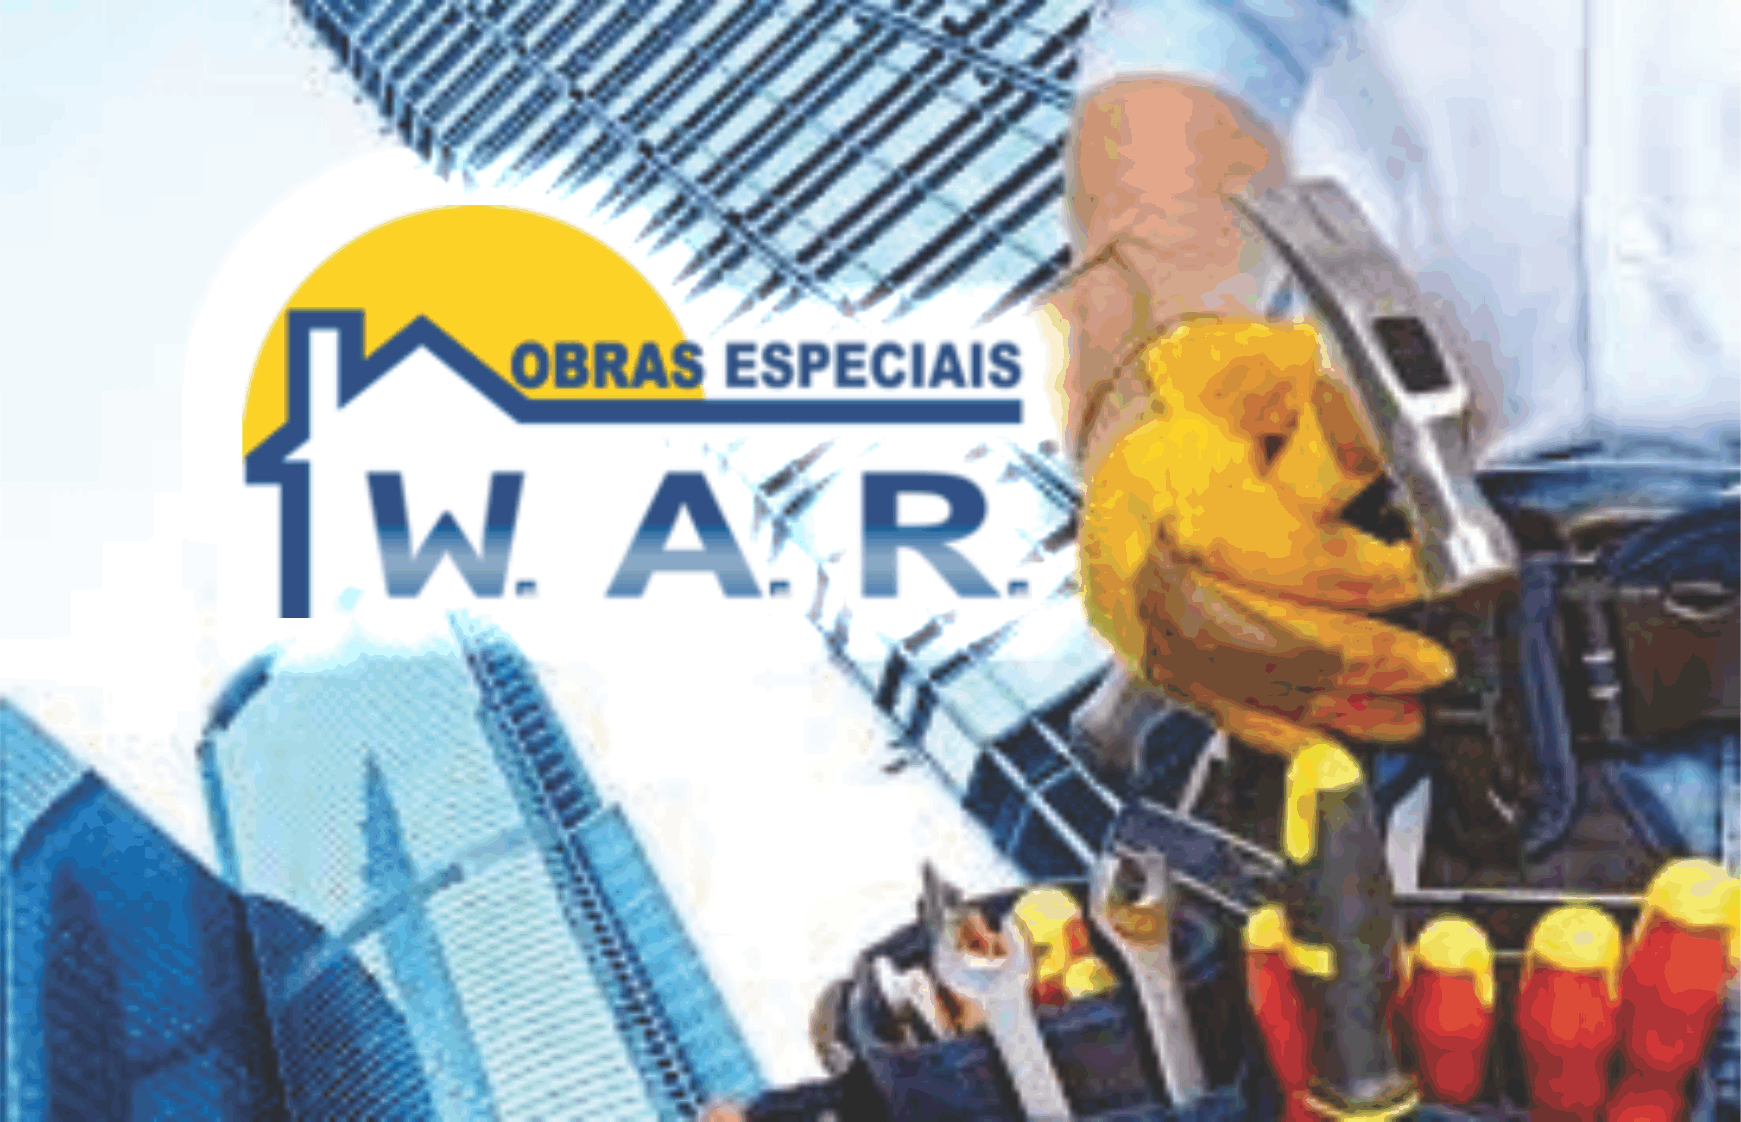 W.A.R. Obras Especiais      RUA CHILE, 642, CURITIBA - PR  Fones: (41)99931-4099 / (41) 99546-4452